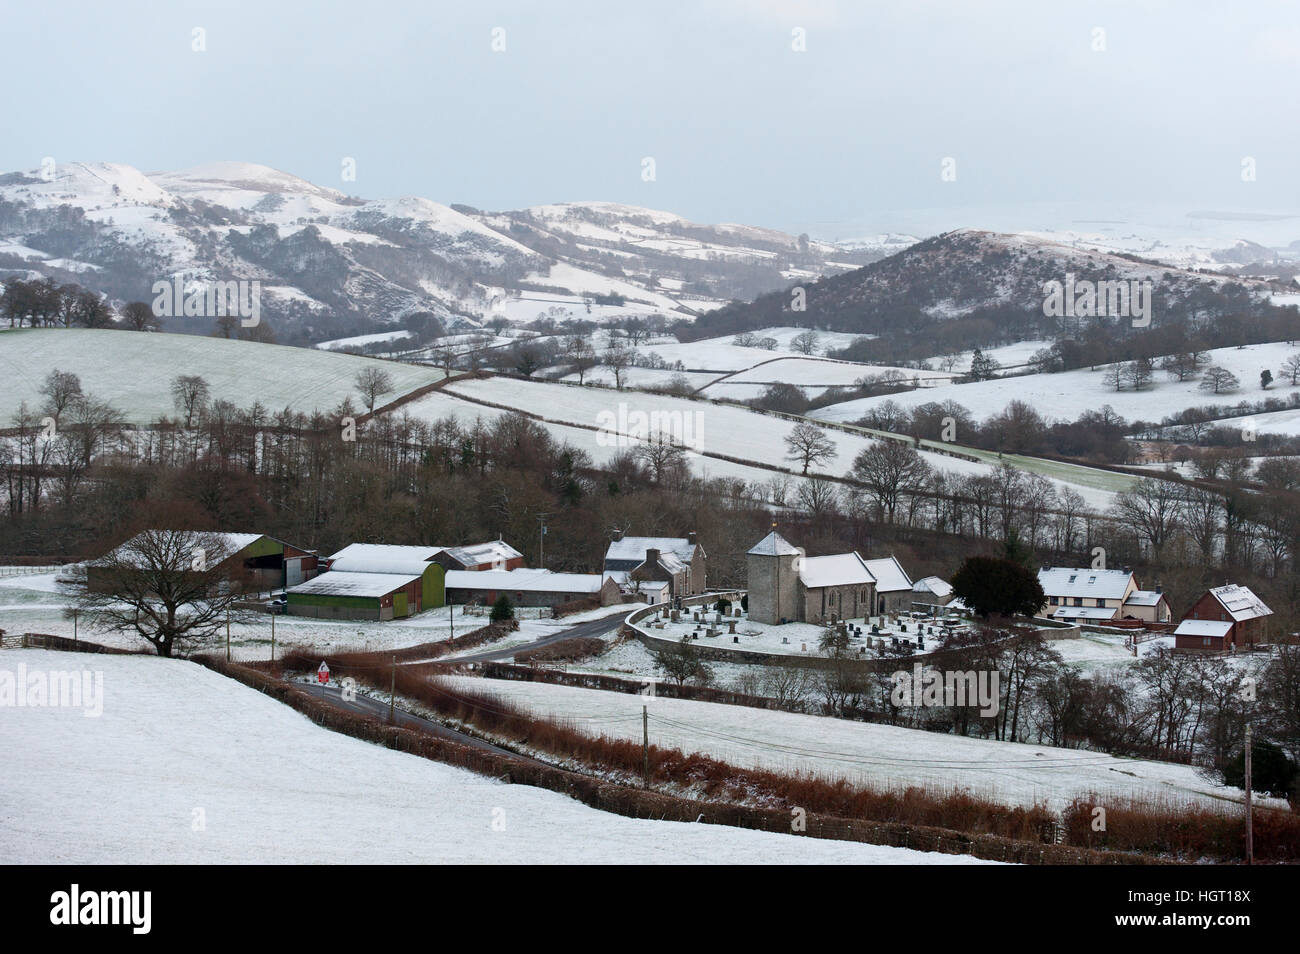 Llanddewi'r mcg, Powys, Wales, UK. 13 janvier, 2017. St David's Church dans le minuscule hameau de Gallois Llanddewi'r mcg, dans Powys, Royaume-Uni. est entouré d'un paysage hivernal © Graham M. Lawrence/Alamy Live News. Banque D'Images